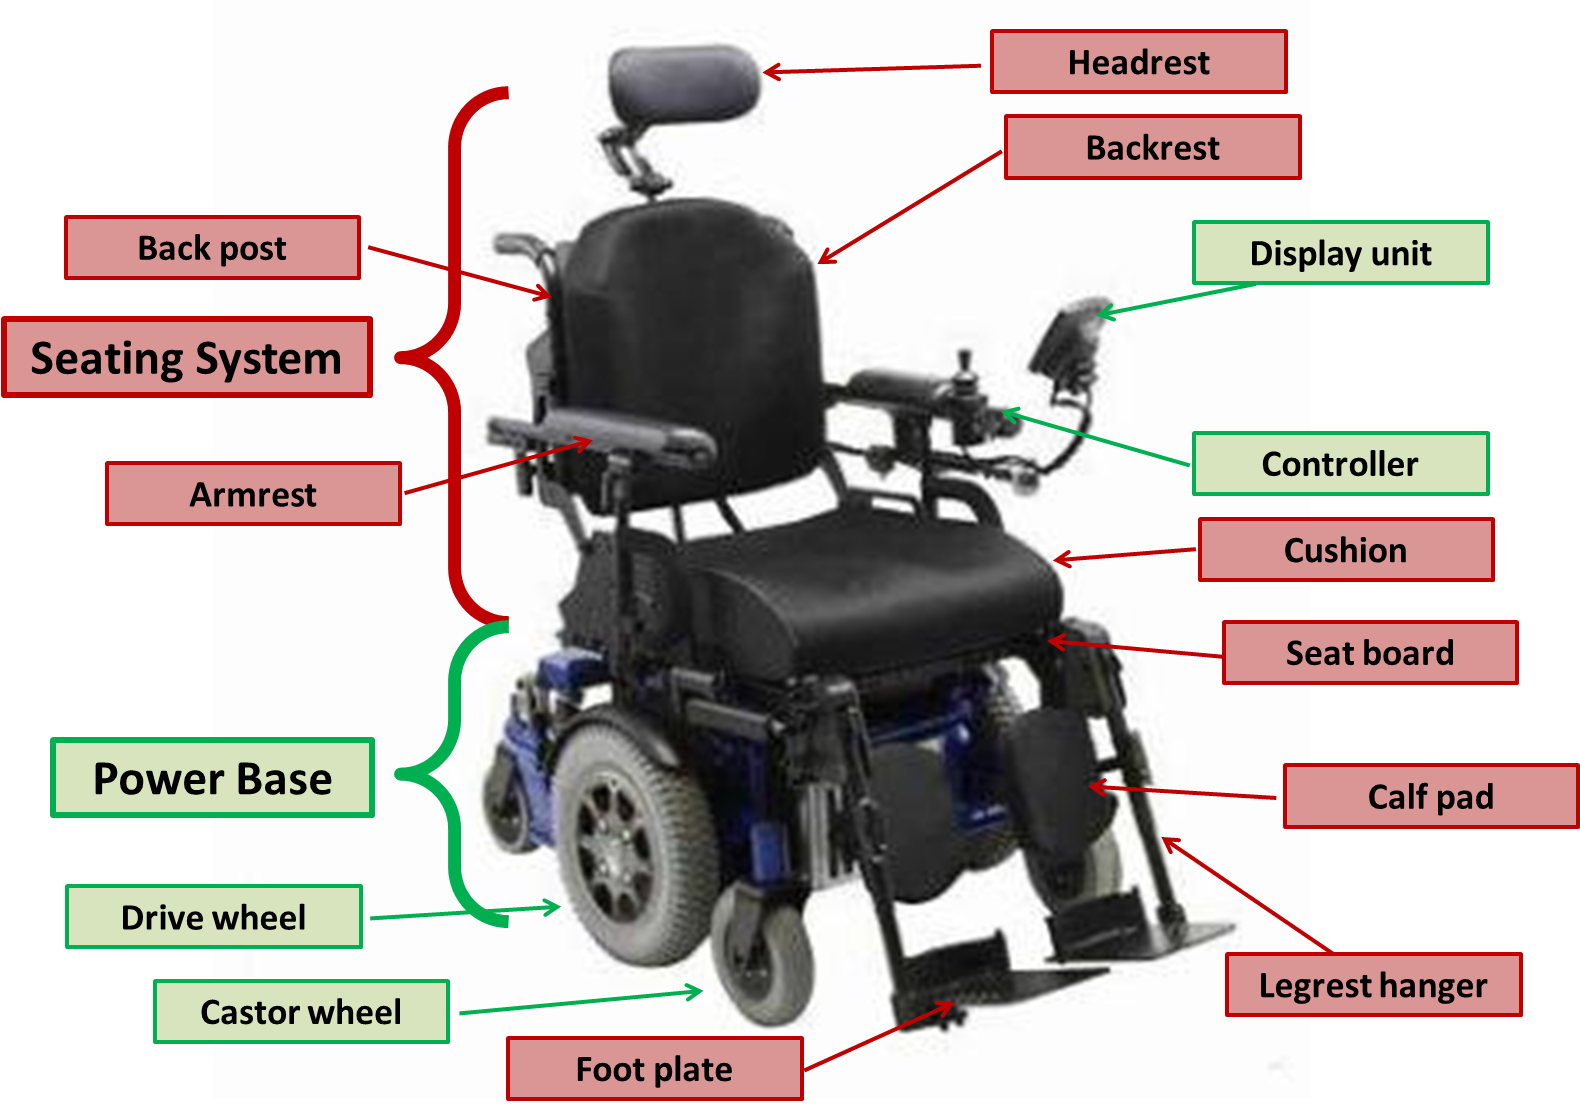 Anatomy of Powered Wheelchair